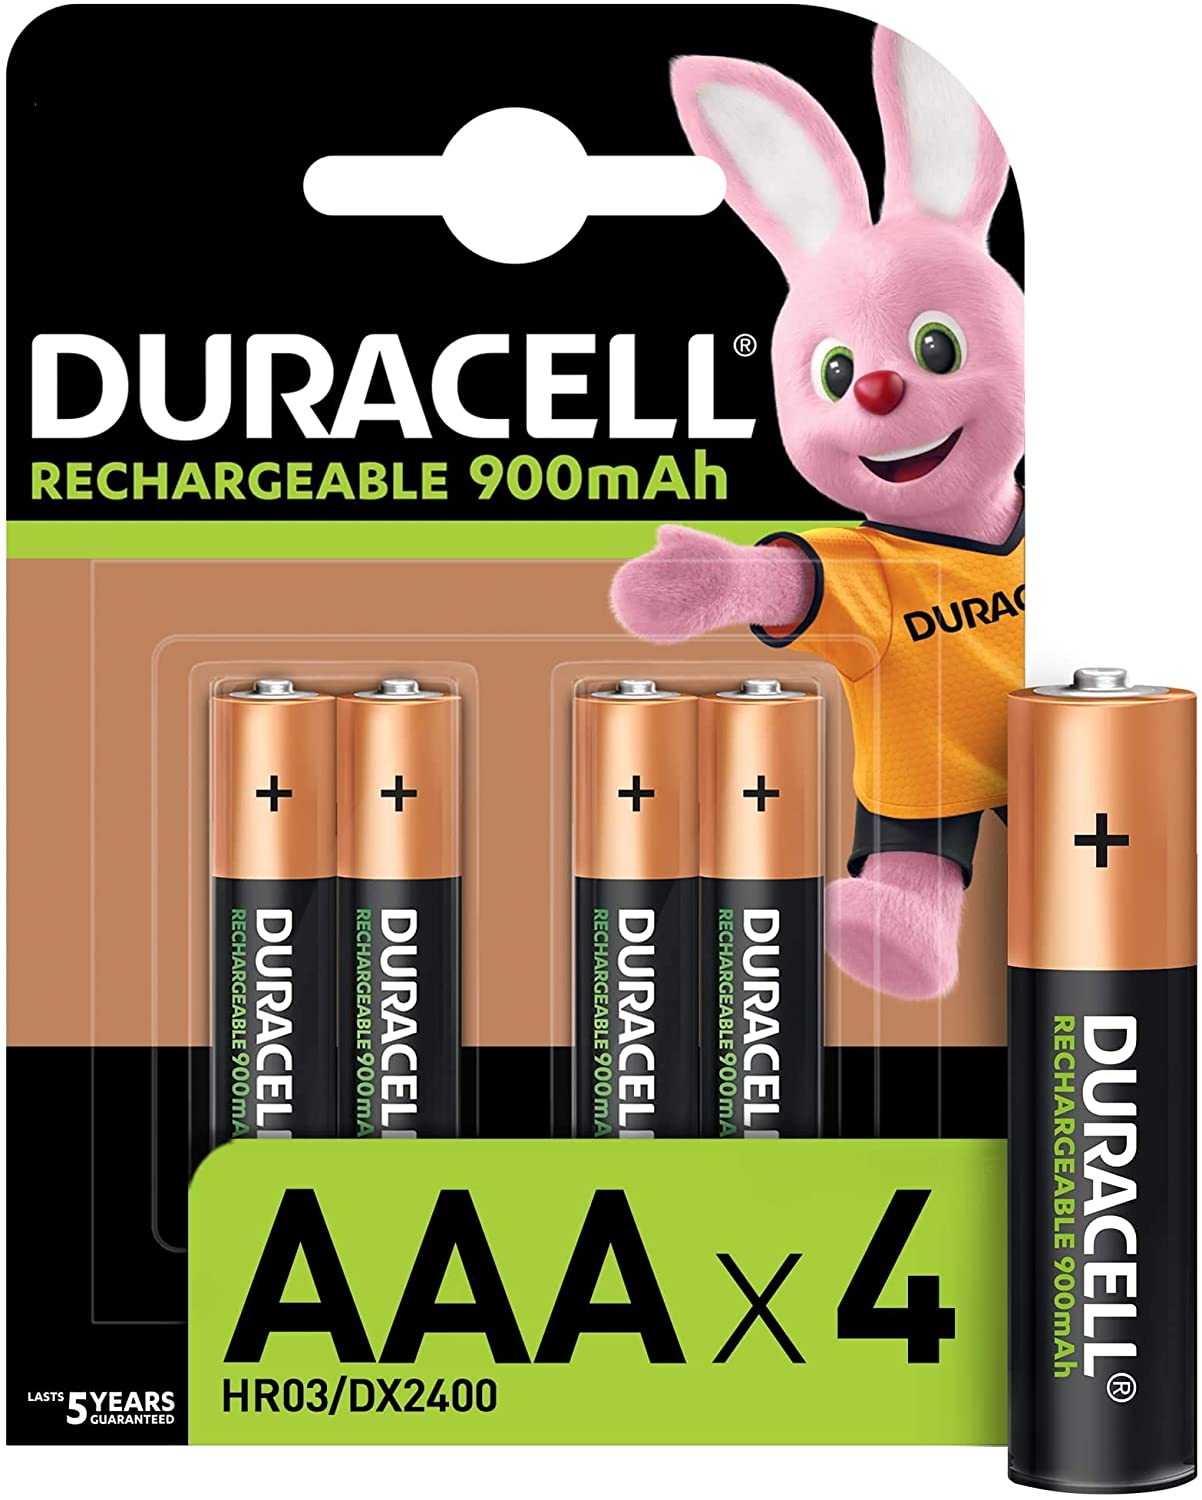 Laden Sie Ihre Duracell Recharge Plus Batterien bis zu 400 Mal.